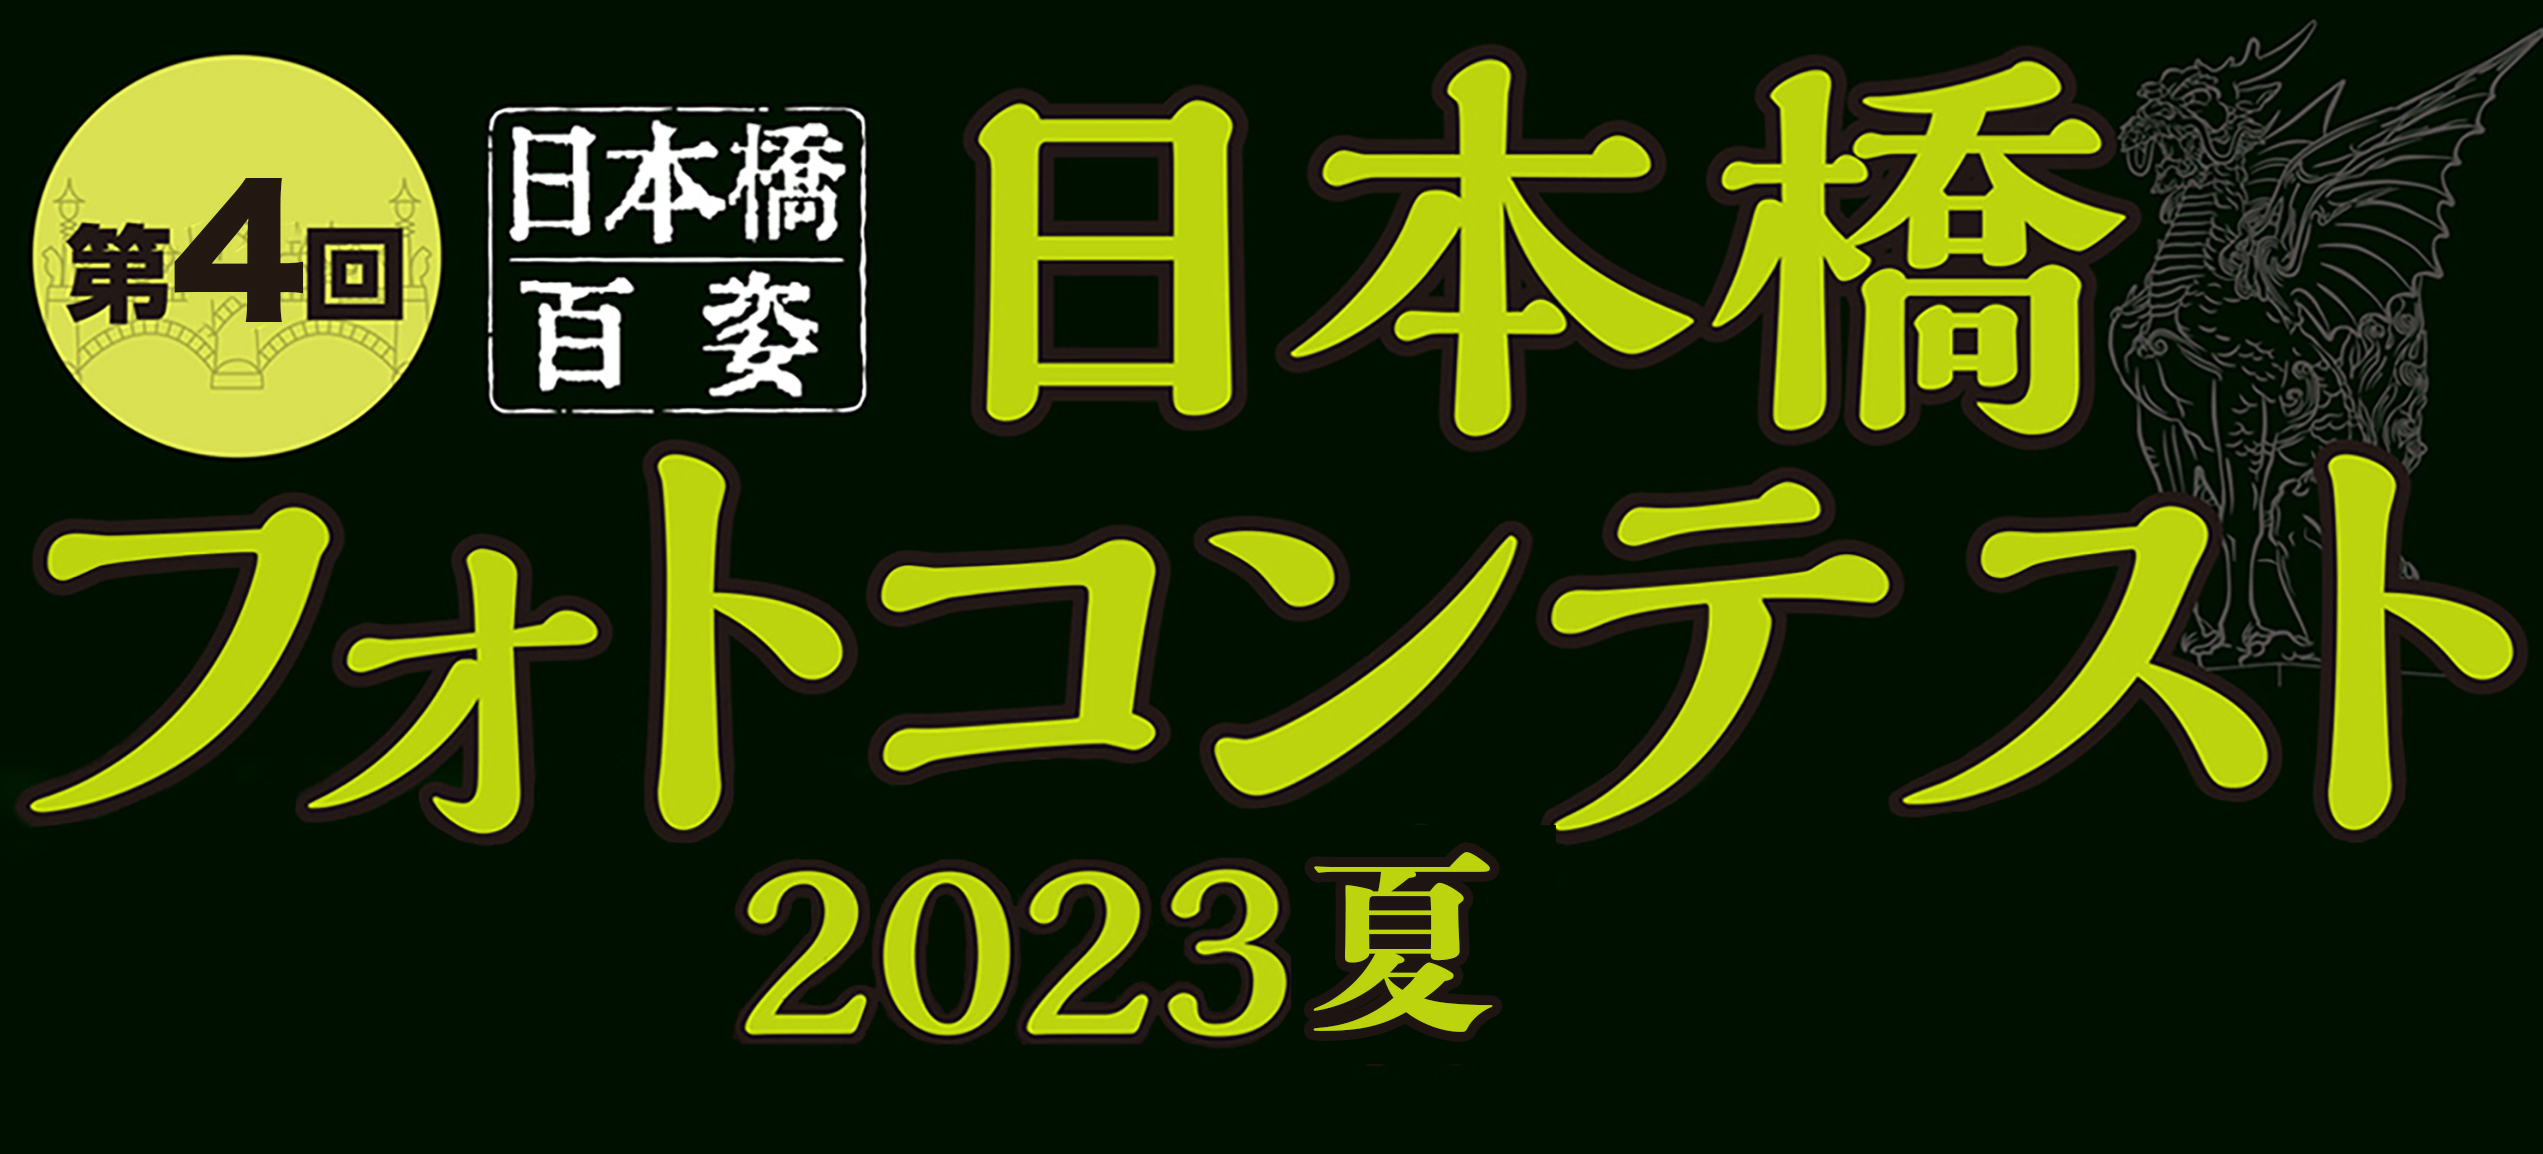 1st Nihonbashi Photo Contest Autumn 2022